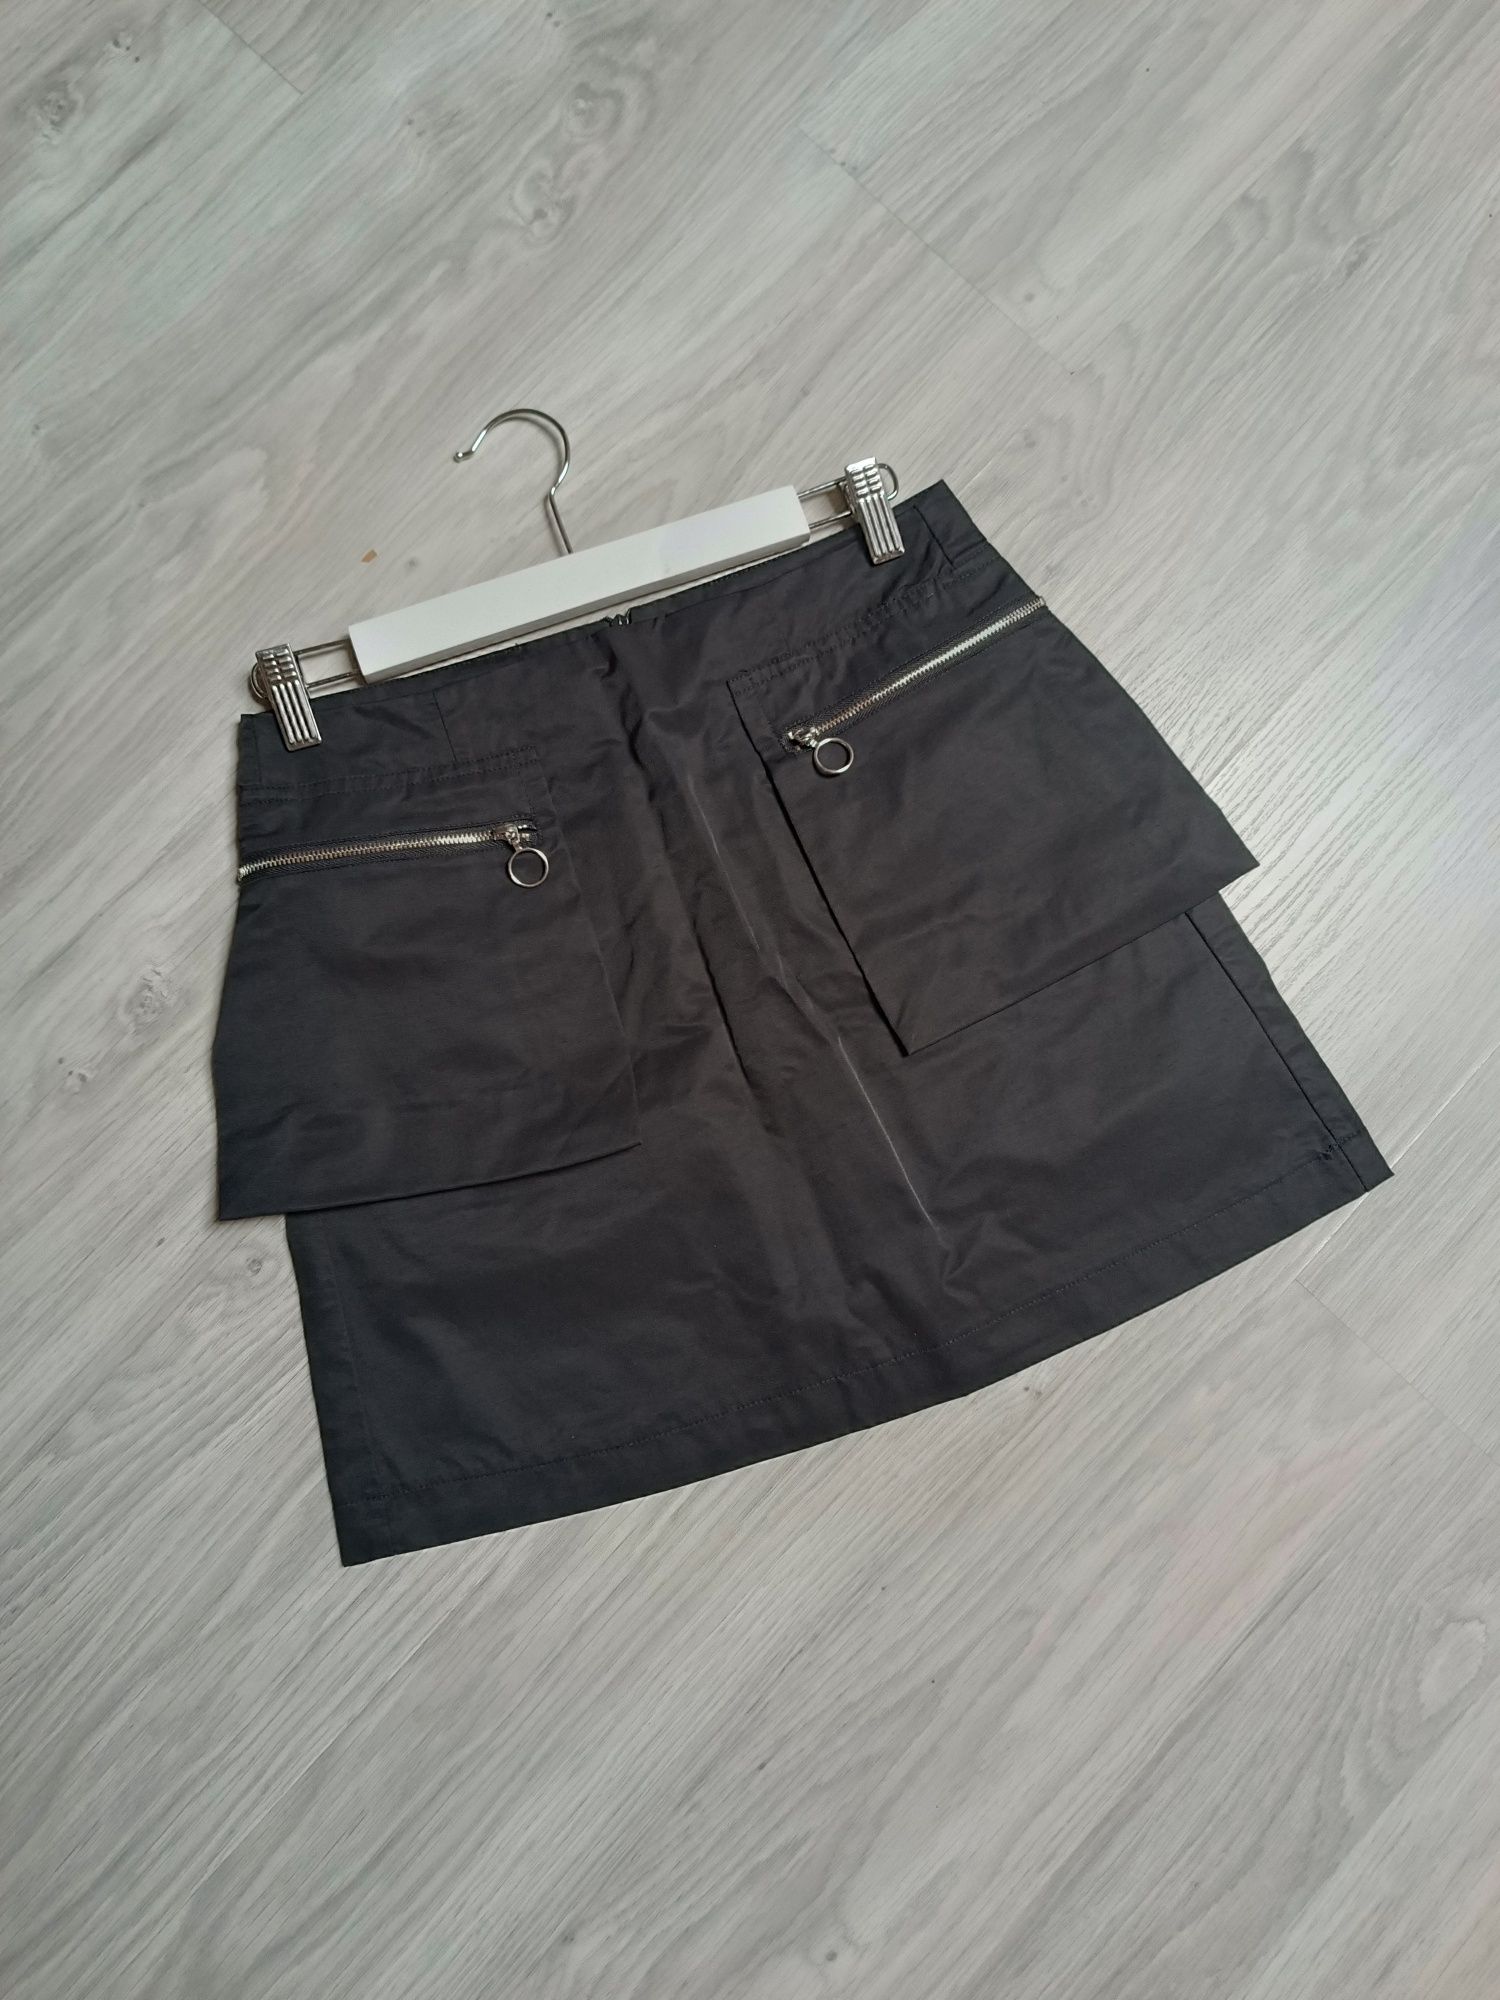 Reserved spódnica czarna szkolna damska spódniczka dziewczęca S 158-64